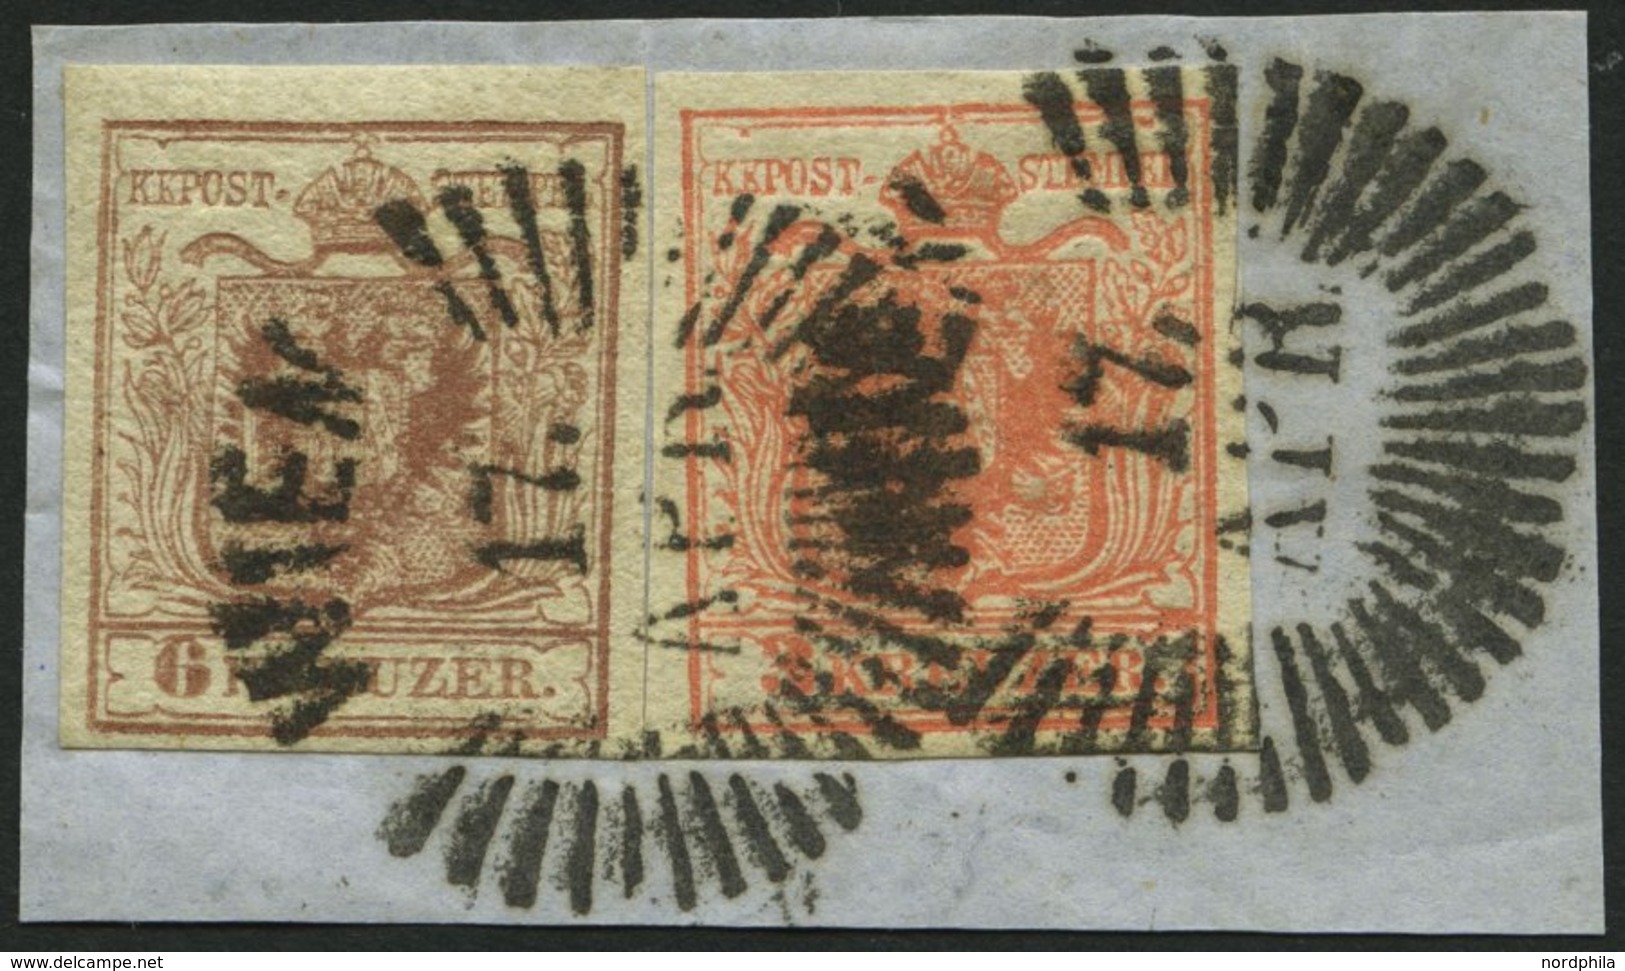 ÖSTERREICH 3,4X BrfStk, 1850, 3 Kr. Rot Und 6 Kr. Braun, Handpapier, Strahlenstempel WIEN, Prachtbriefstück - Usati